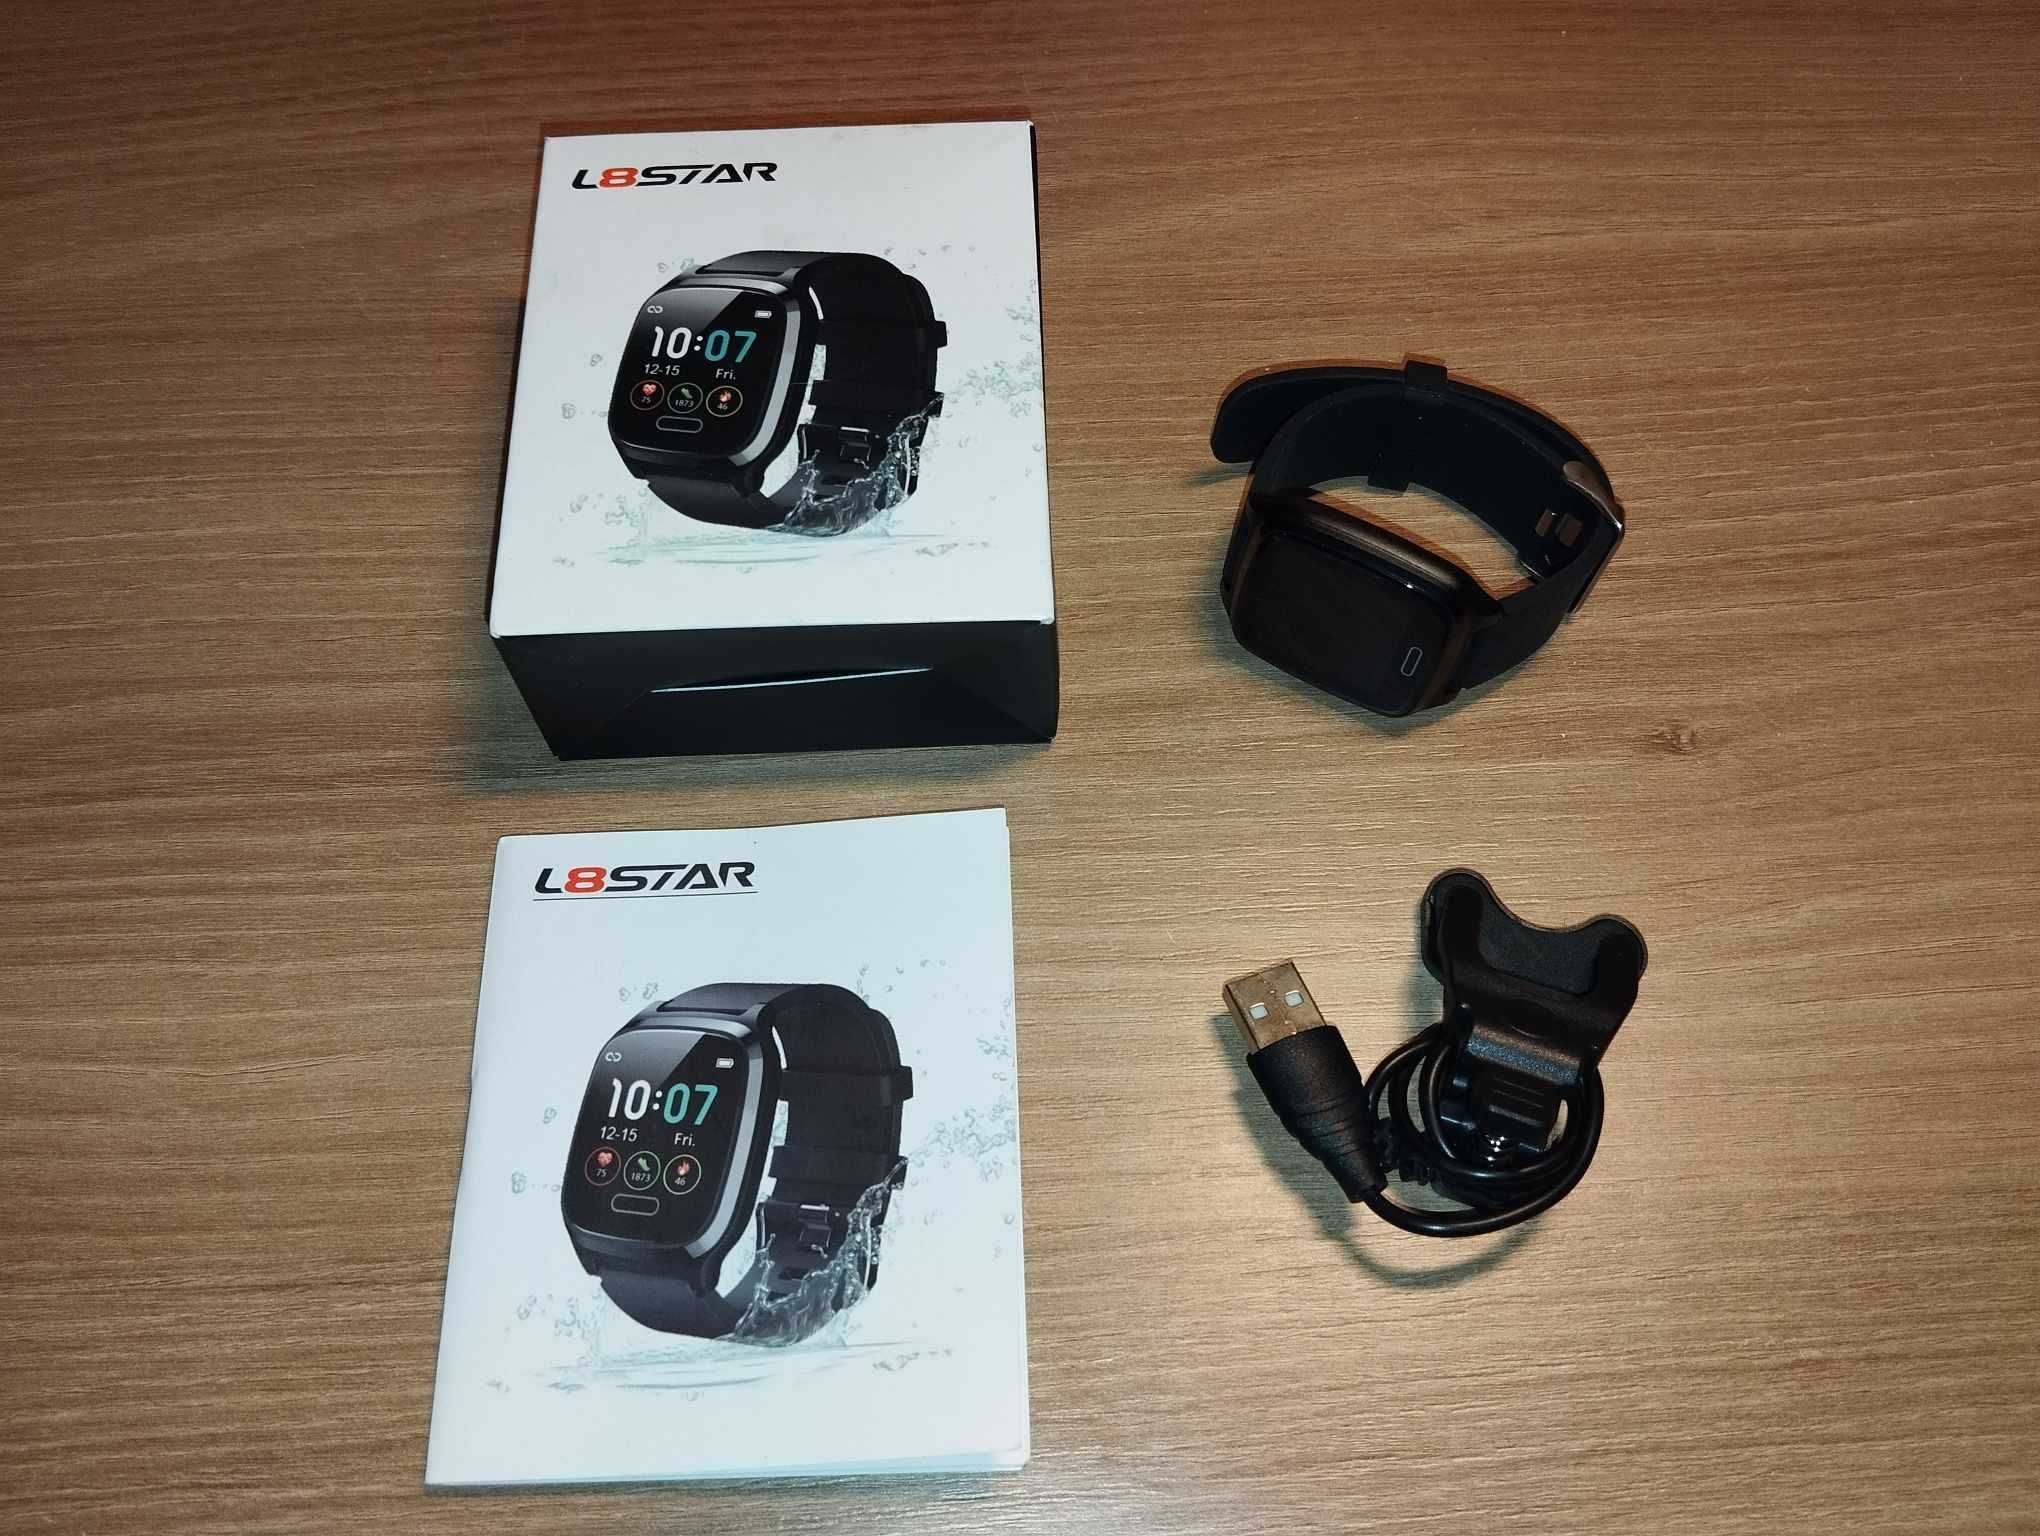 Smartwatch - Zegarek - L8STAR - Czarny